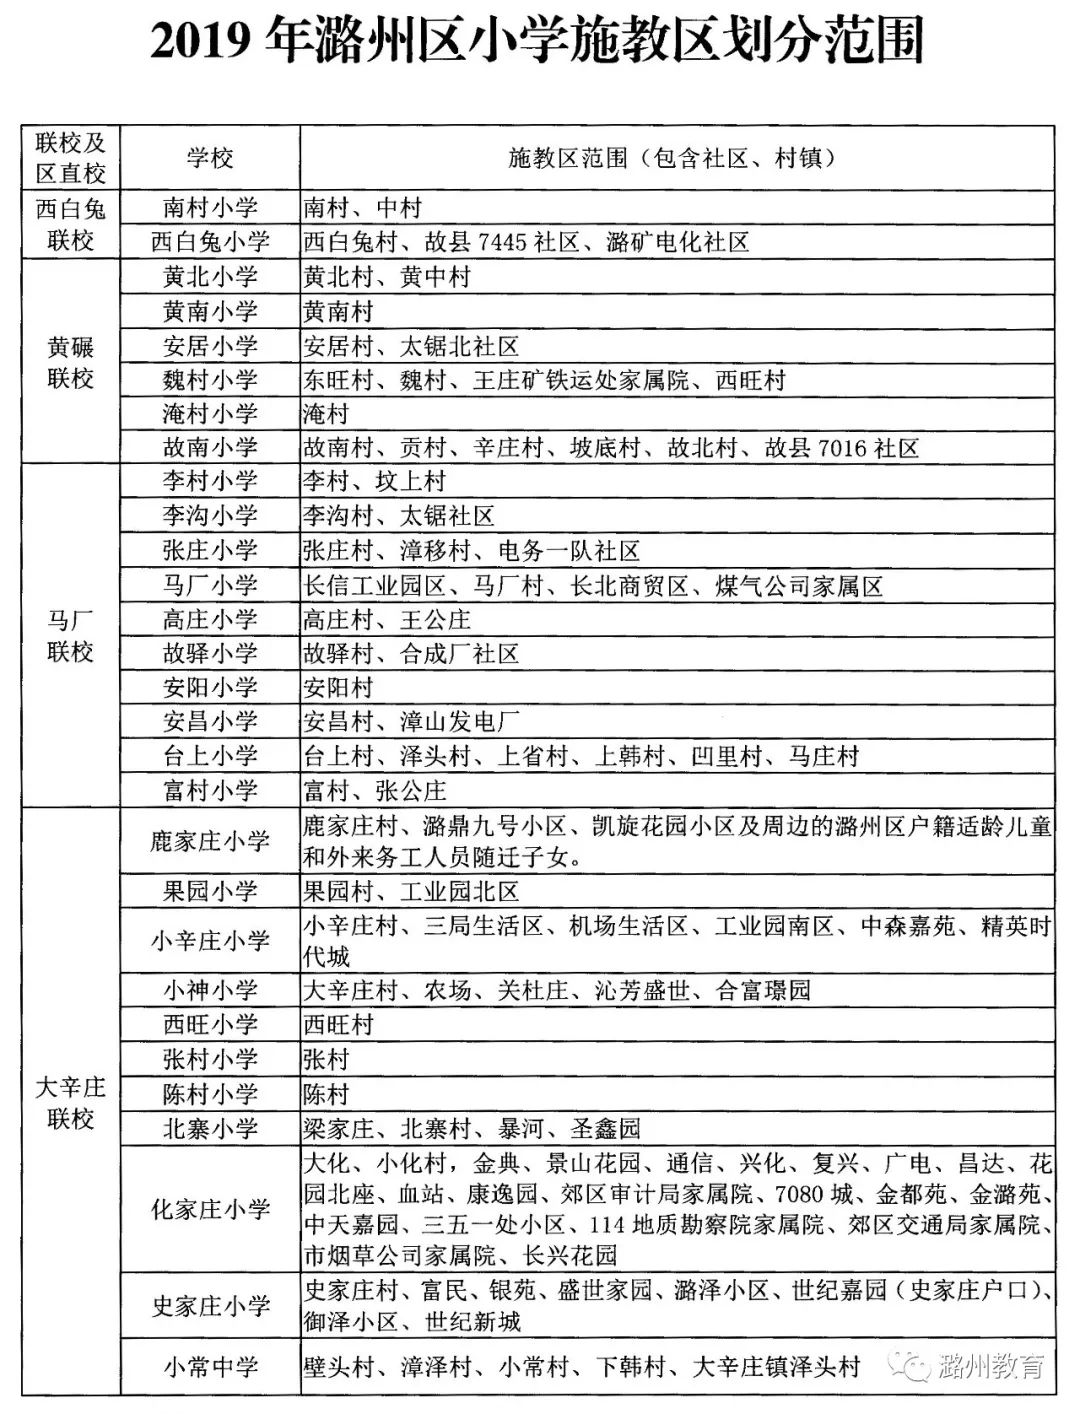 长治潞州区2019年小学招生入学小升初工作实施办法公布附最新学区划分